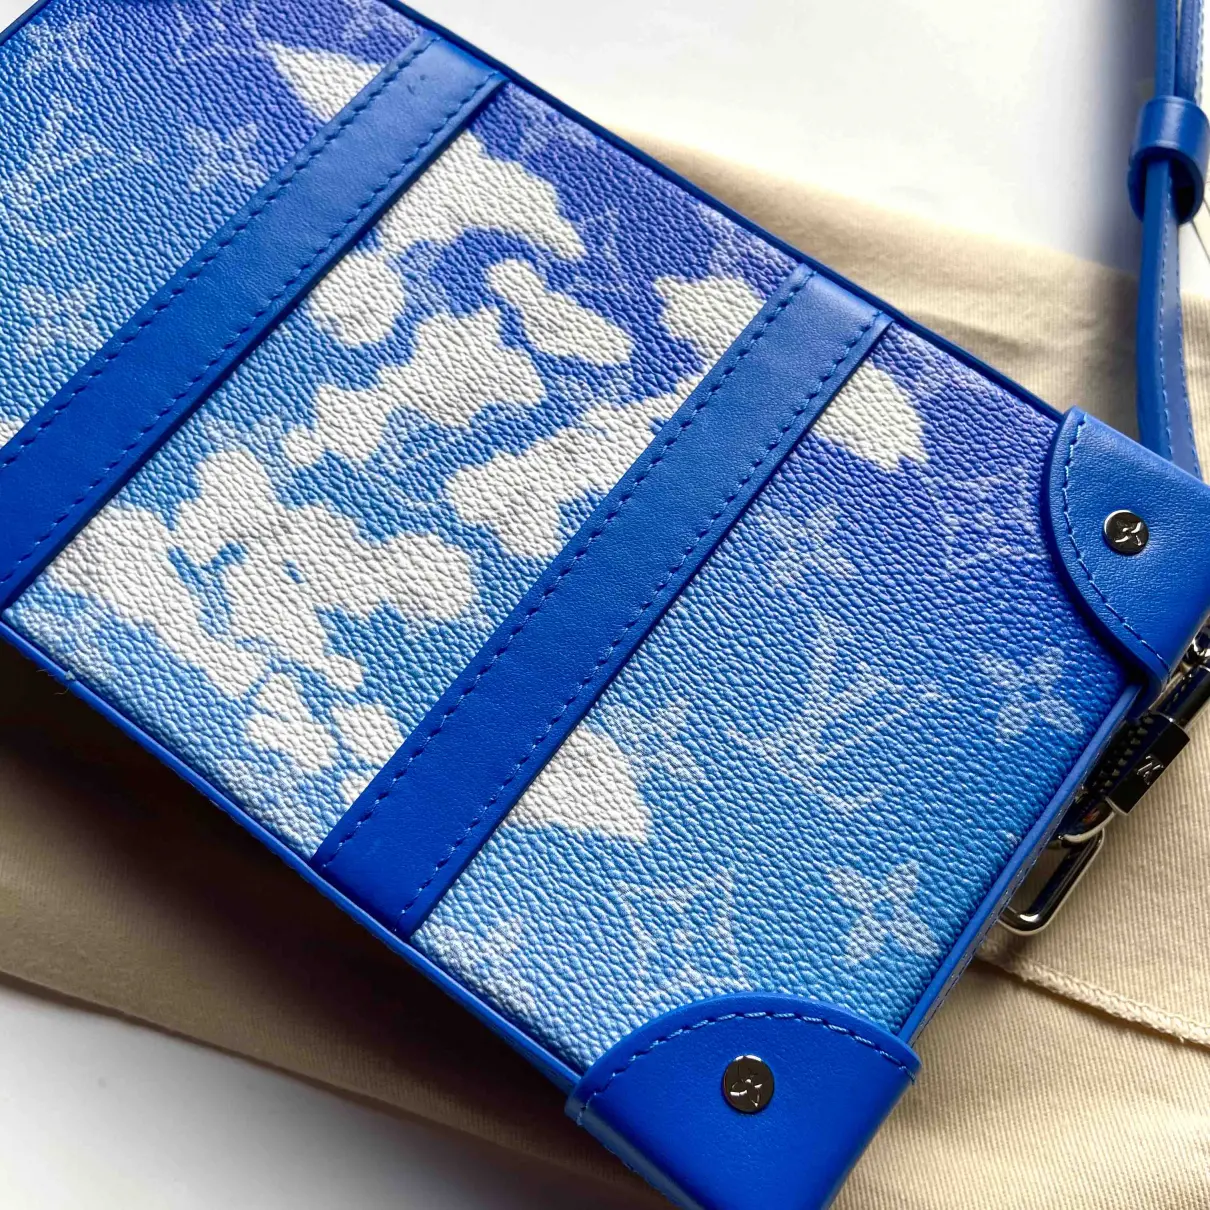 Buy Louis Vuitton Malle Trunk cloth bag online